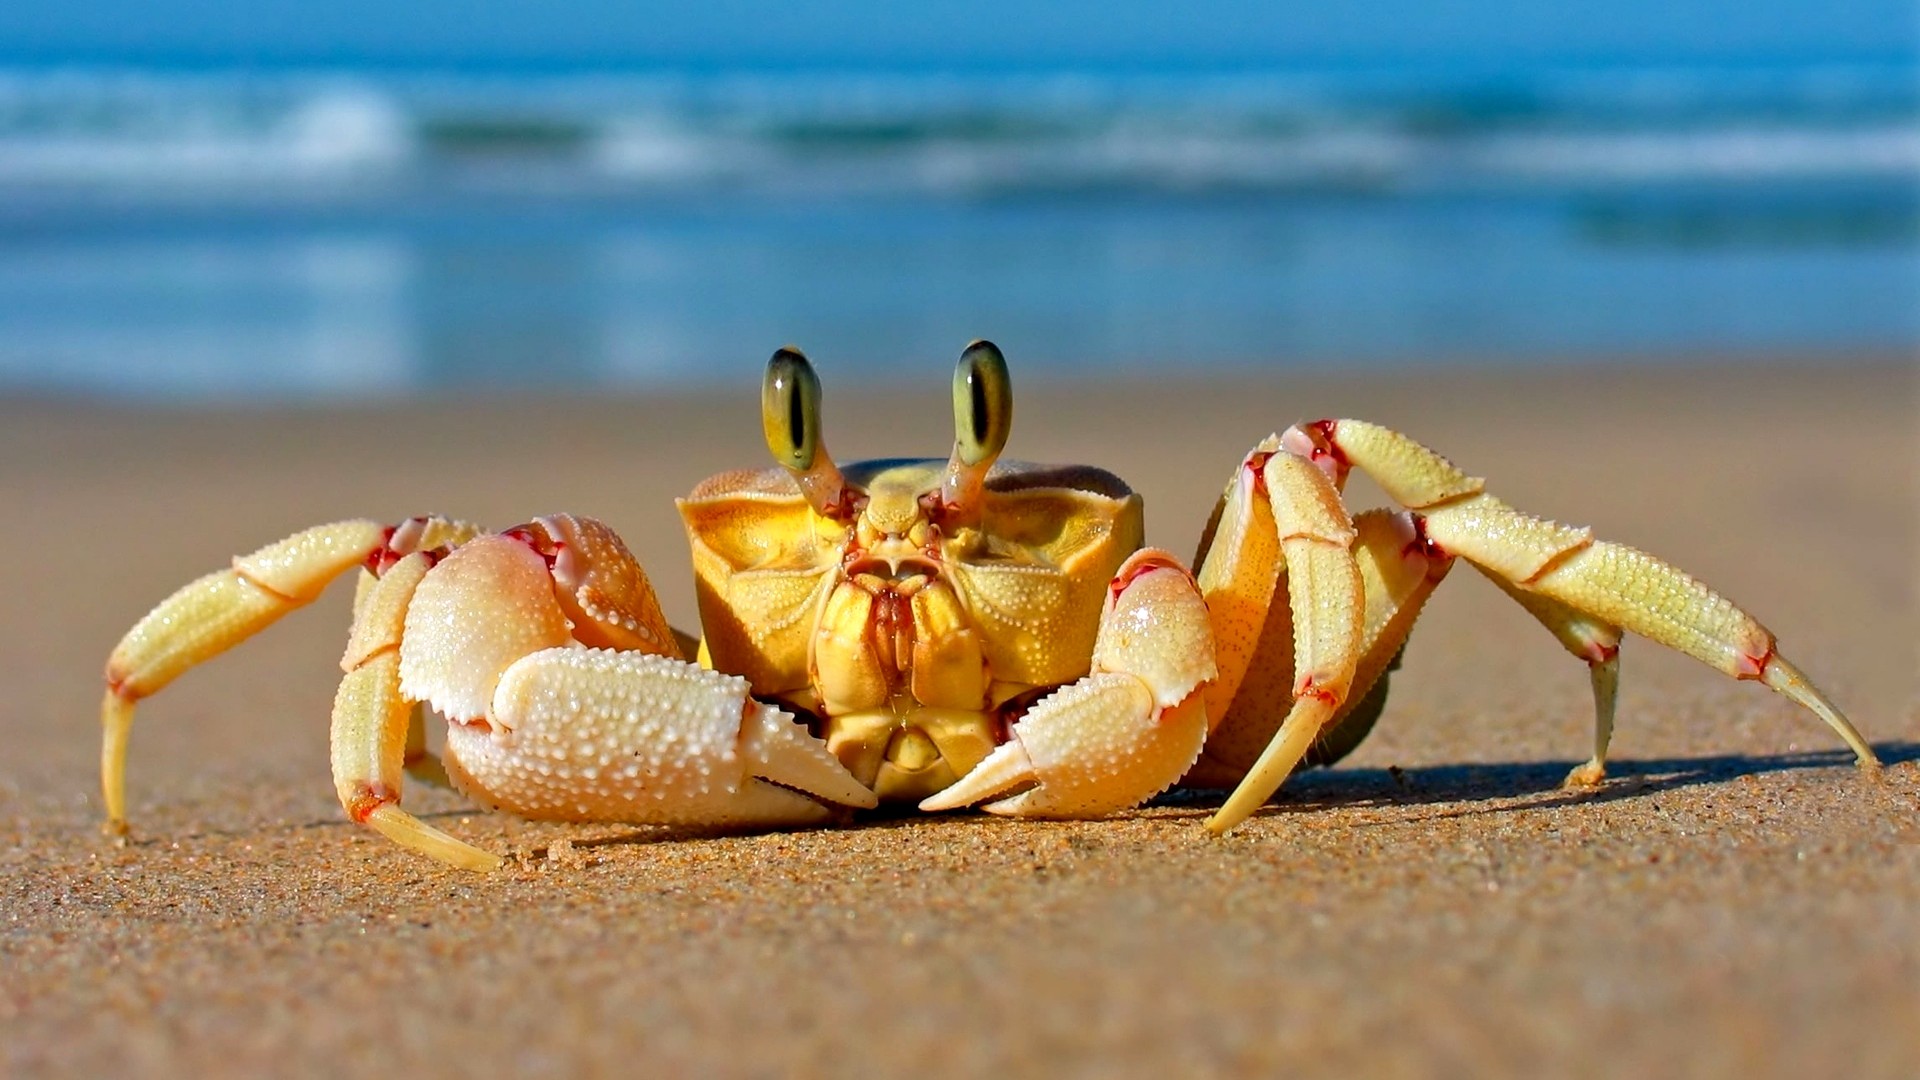 Краб, Средиземное море, песок, смешное, милые животные, Crab, Mediterranean sea, sand, funny, cute animals (horizontal)